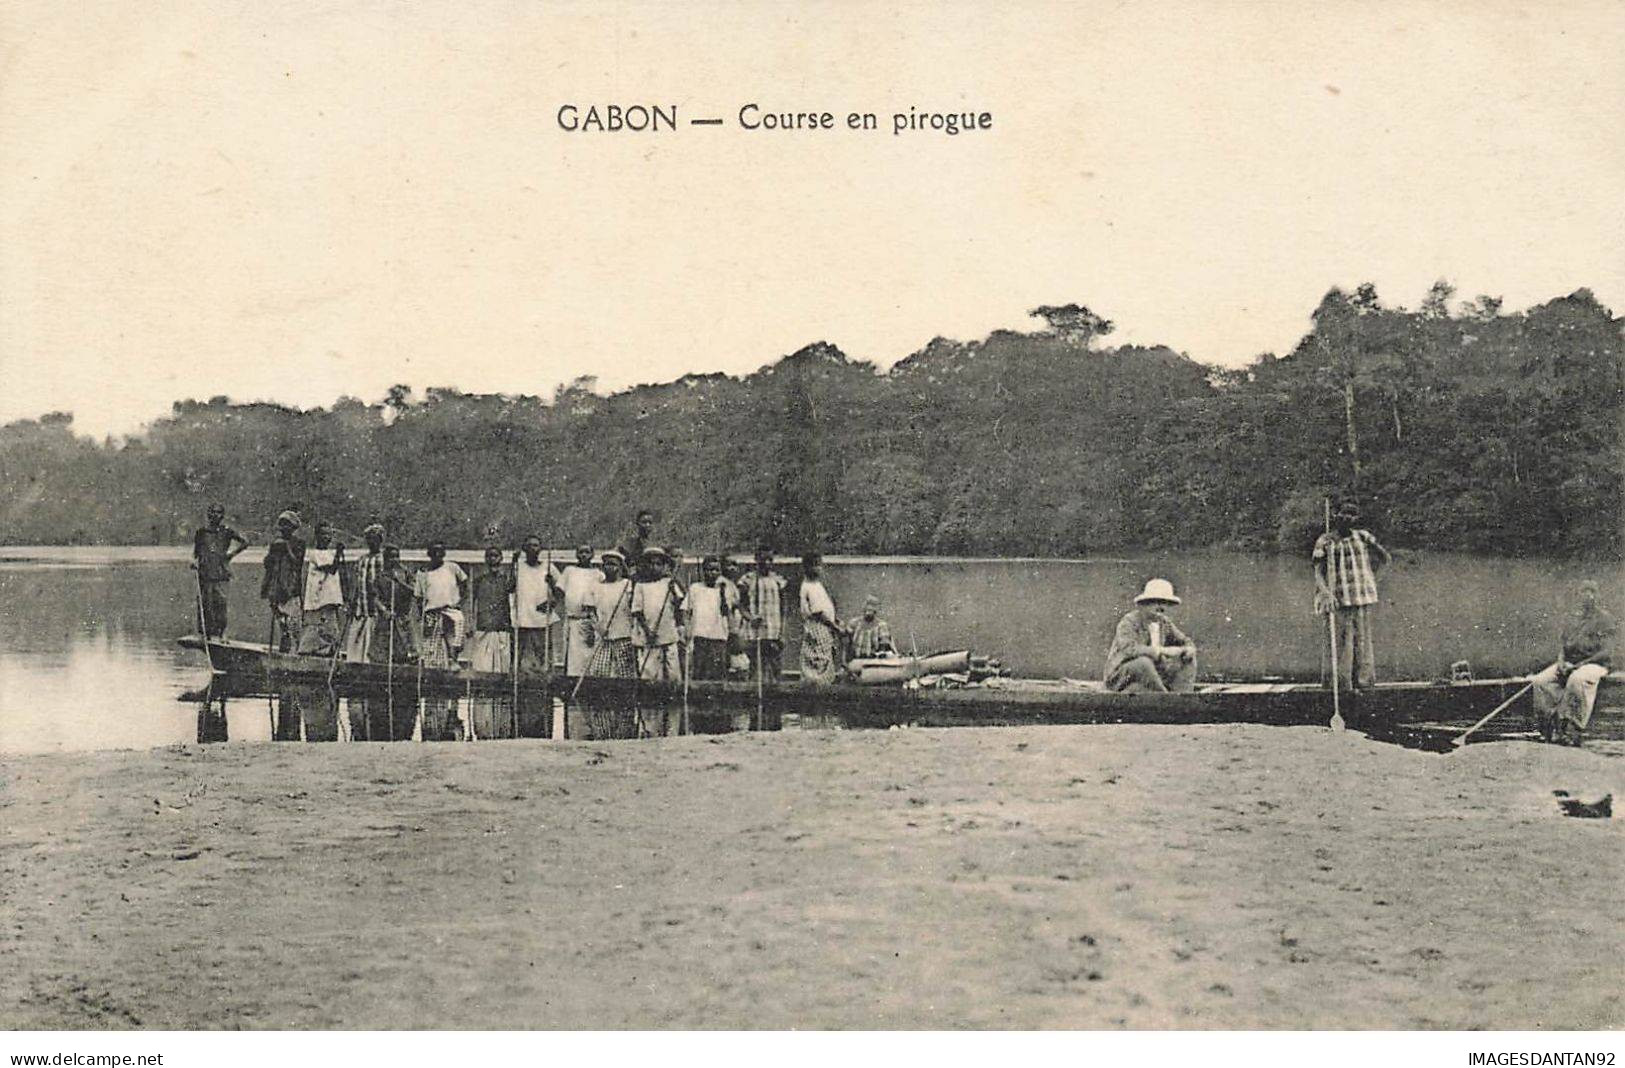 GABON #27731 COURSE EN PIROGUE - Gabon